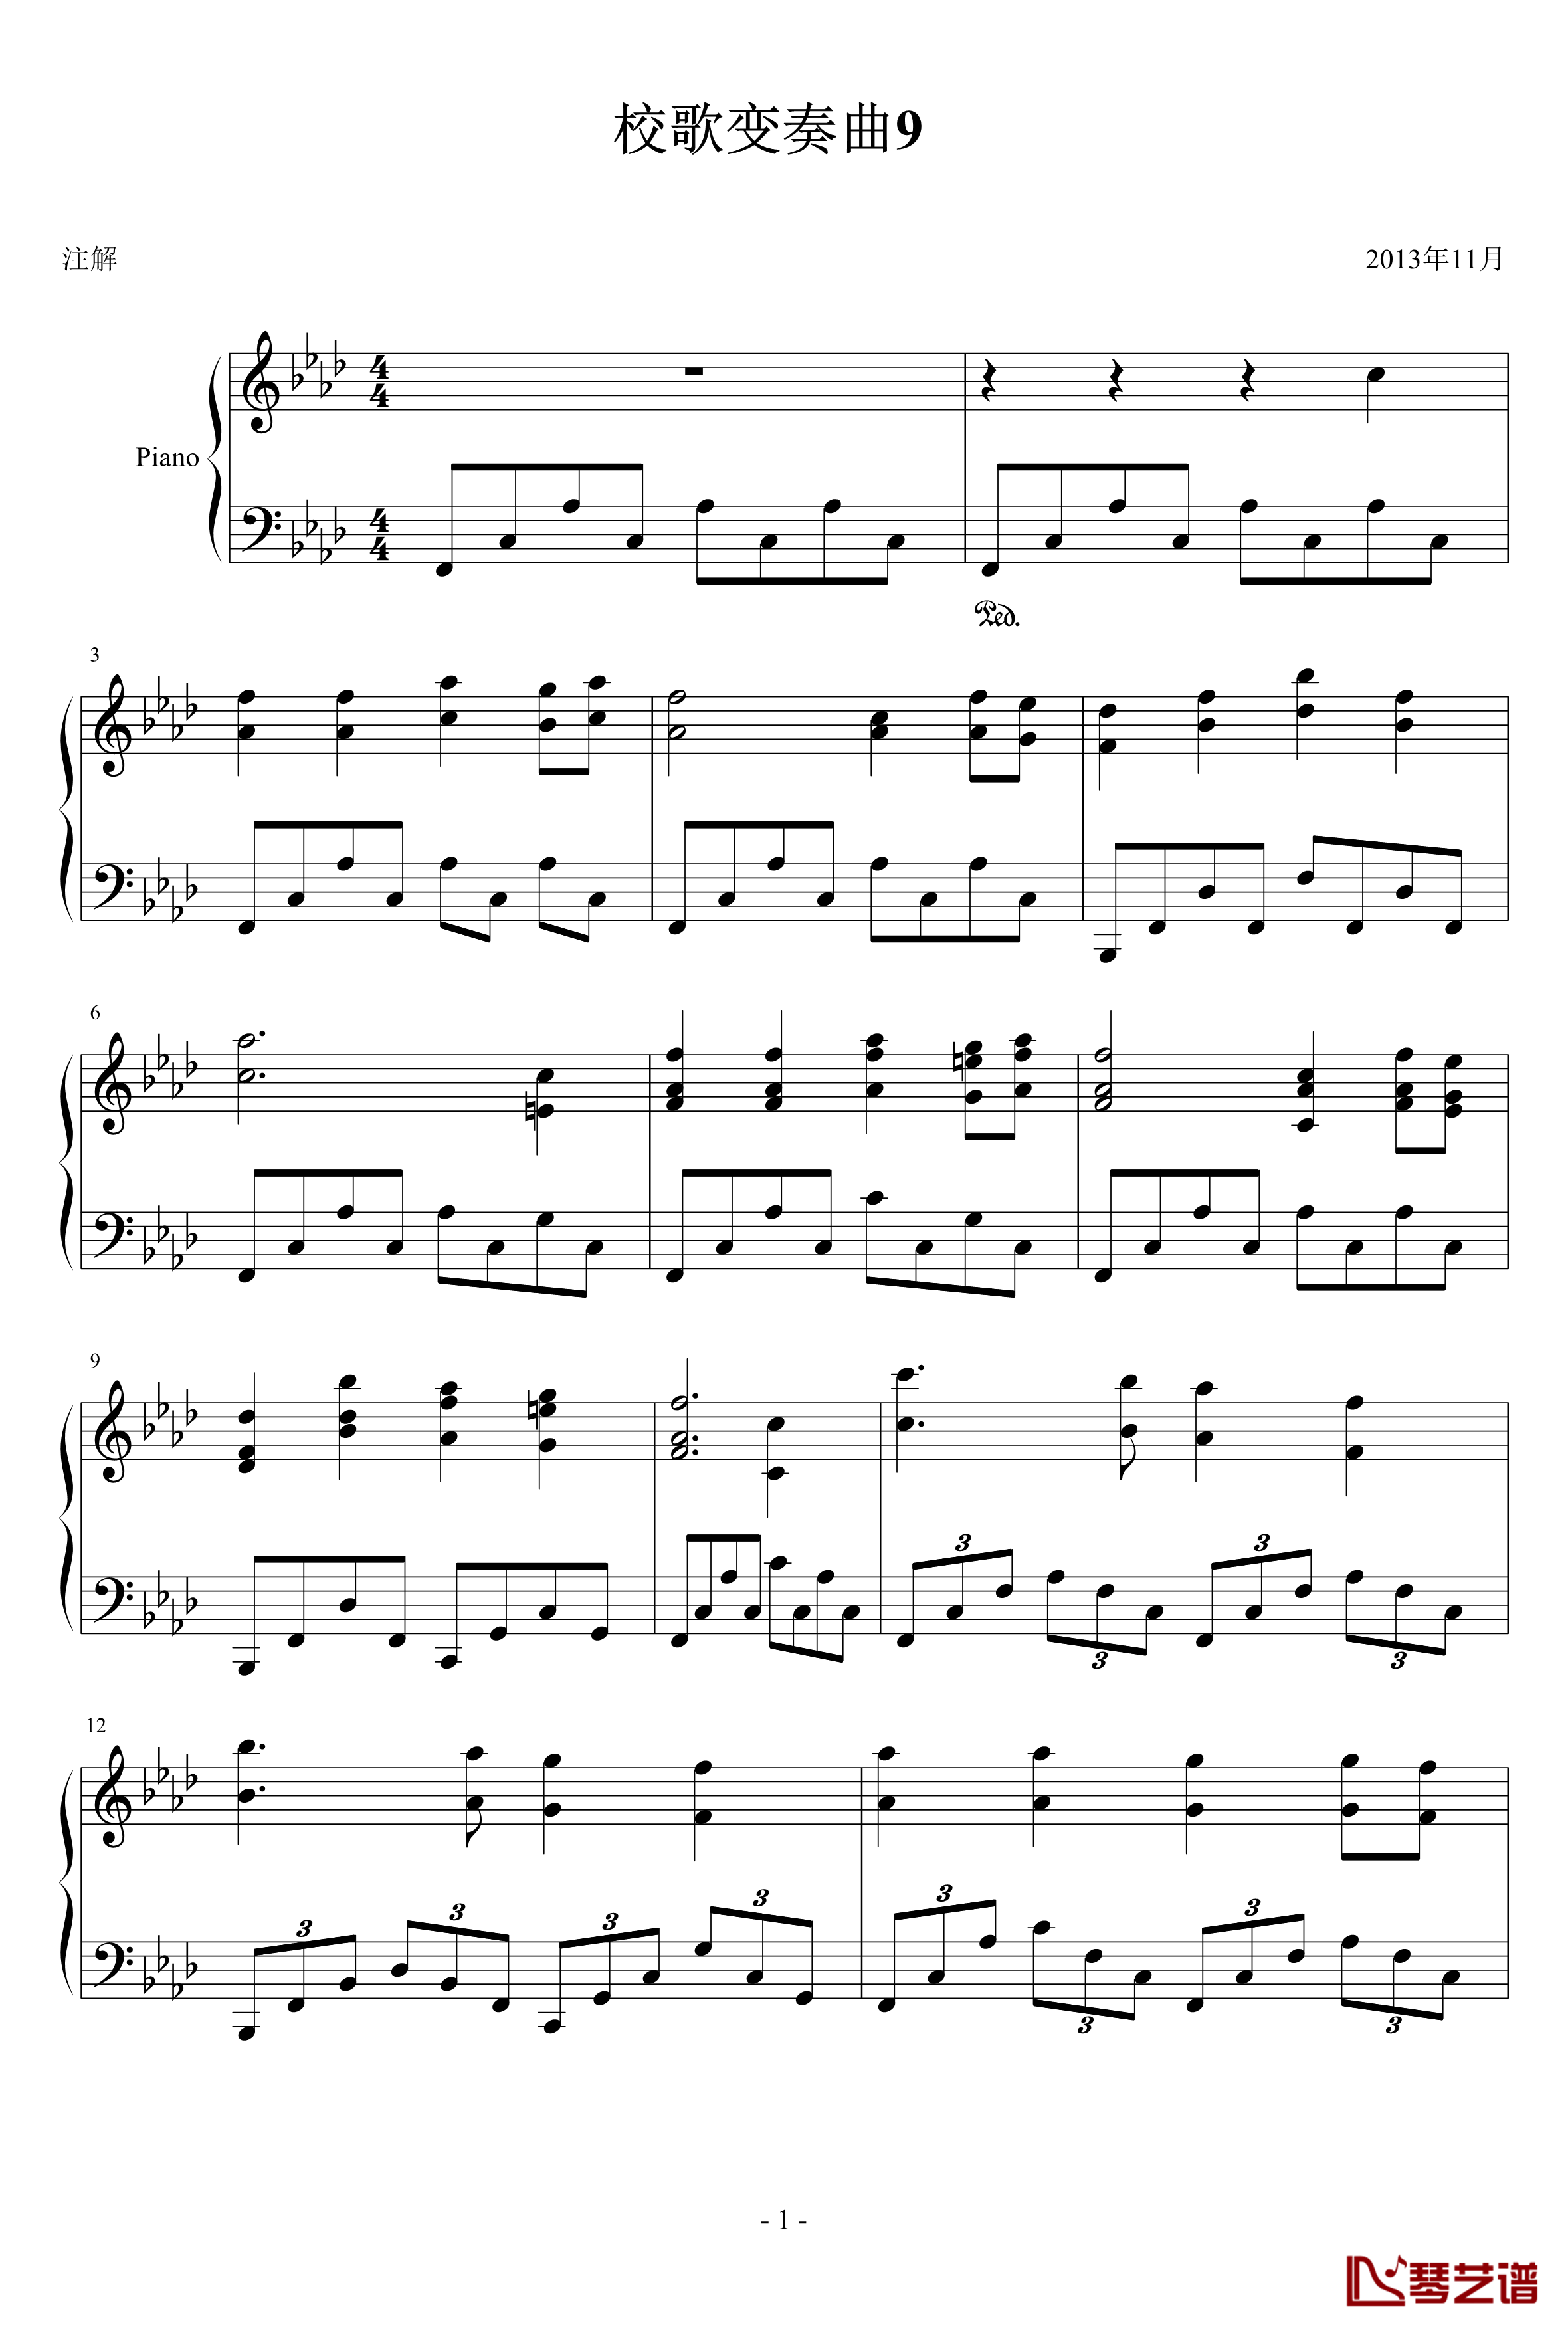 校歌变奏曲9钢琴谱-绝望的一曲-琴欲1